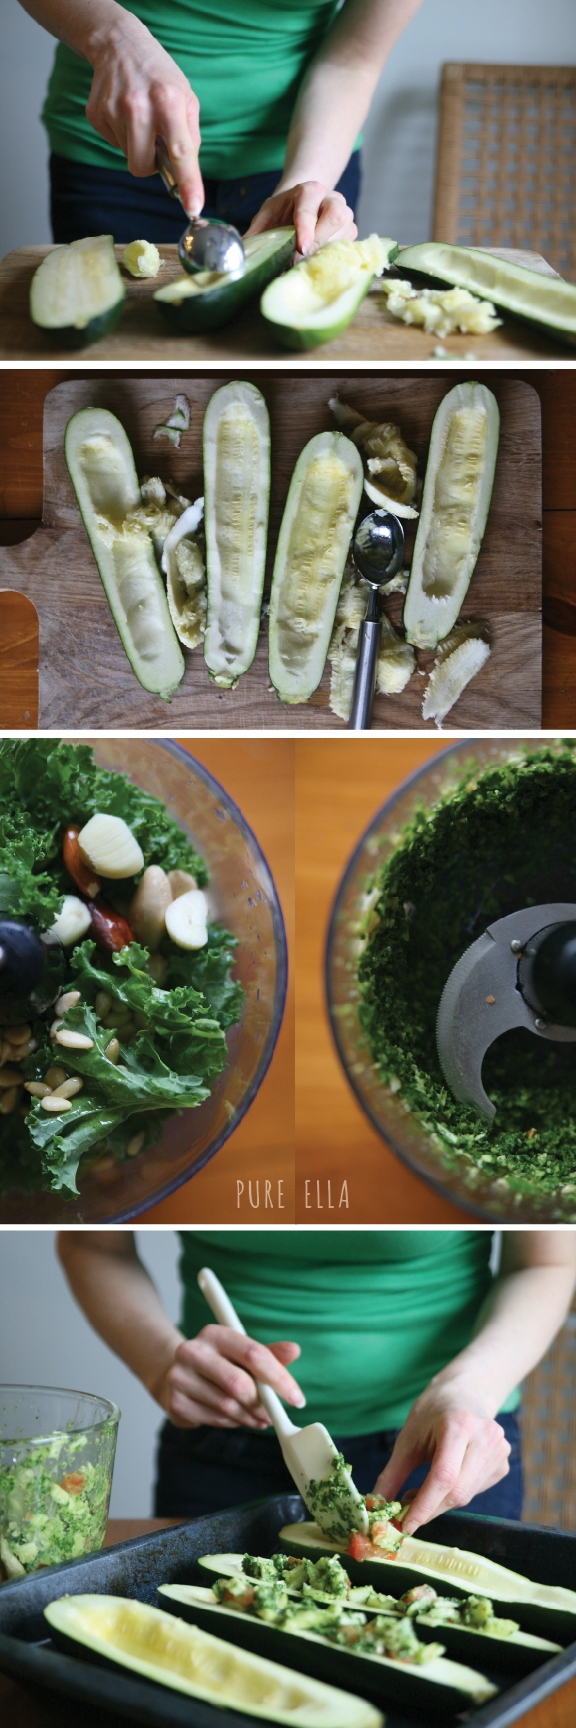 Kale Pesto Baked Zucchini - Image 2